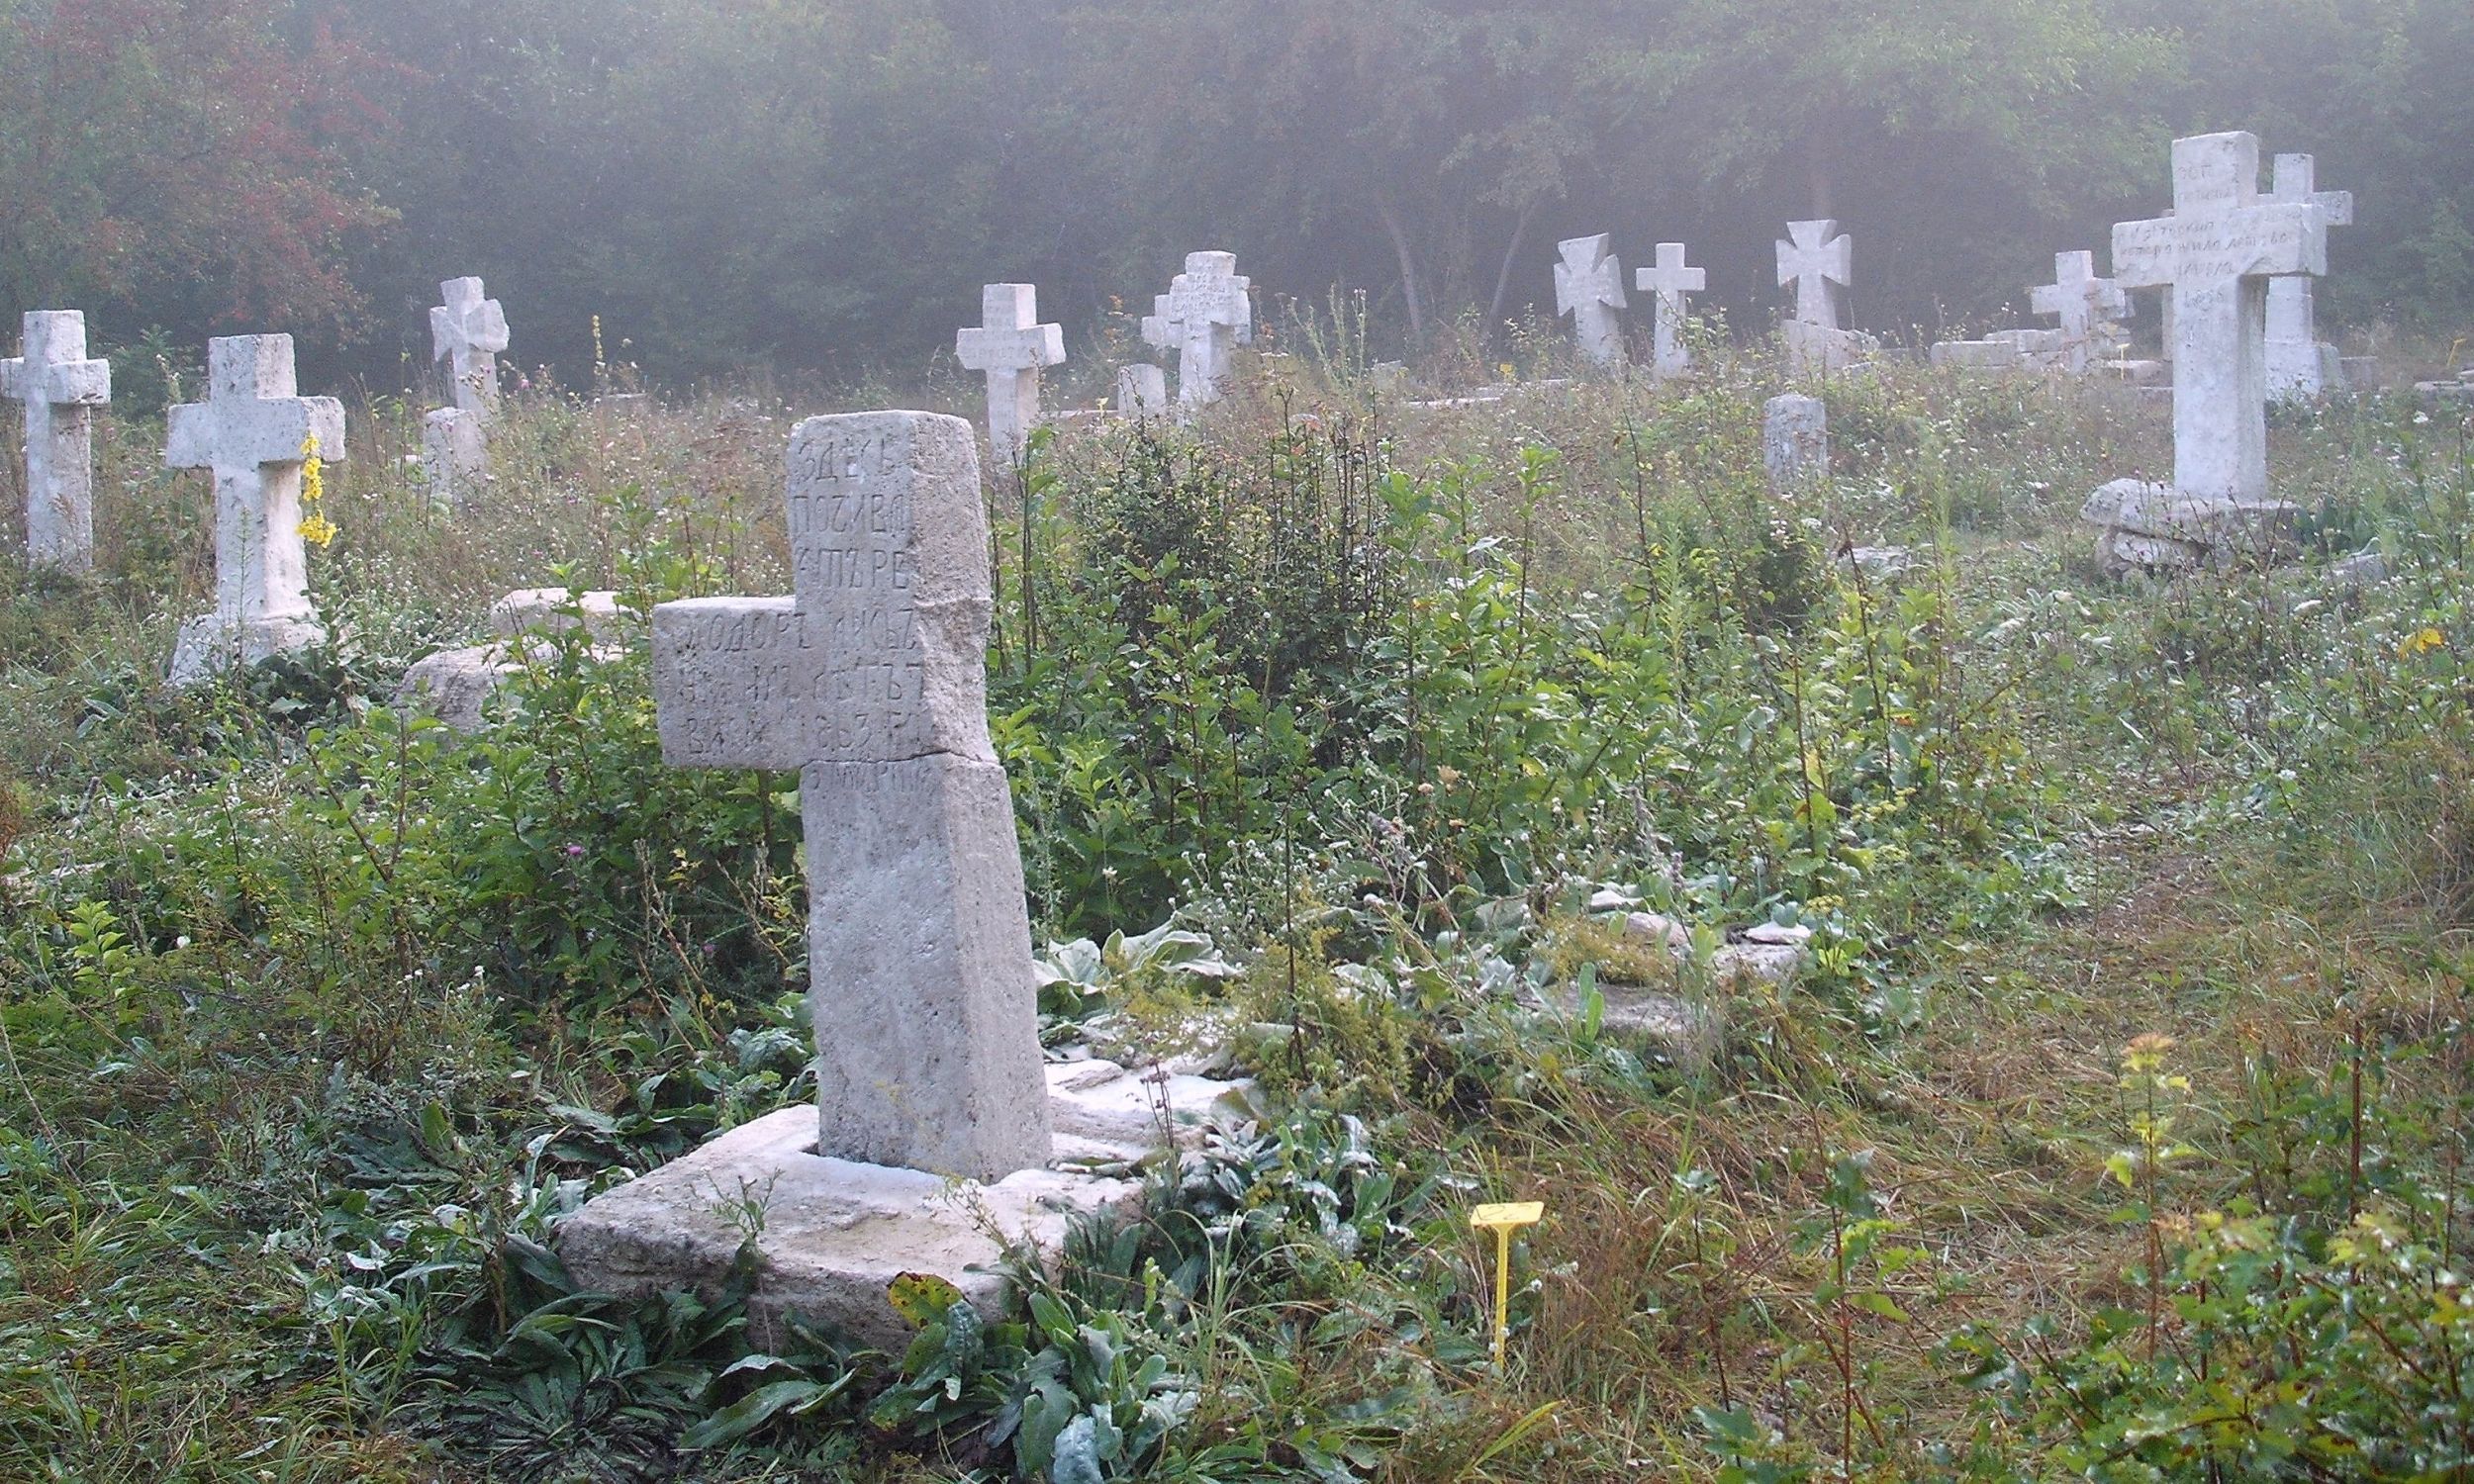 Najstarszy z cmentarzy prawosławnych w Prytulivce, remontowany w 2012 roku przez Stowarzyszenie Magurycz. Fot. Wikimedia/Birczanin – praca własna, CC BY-SA 3.0